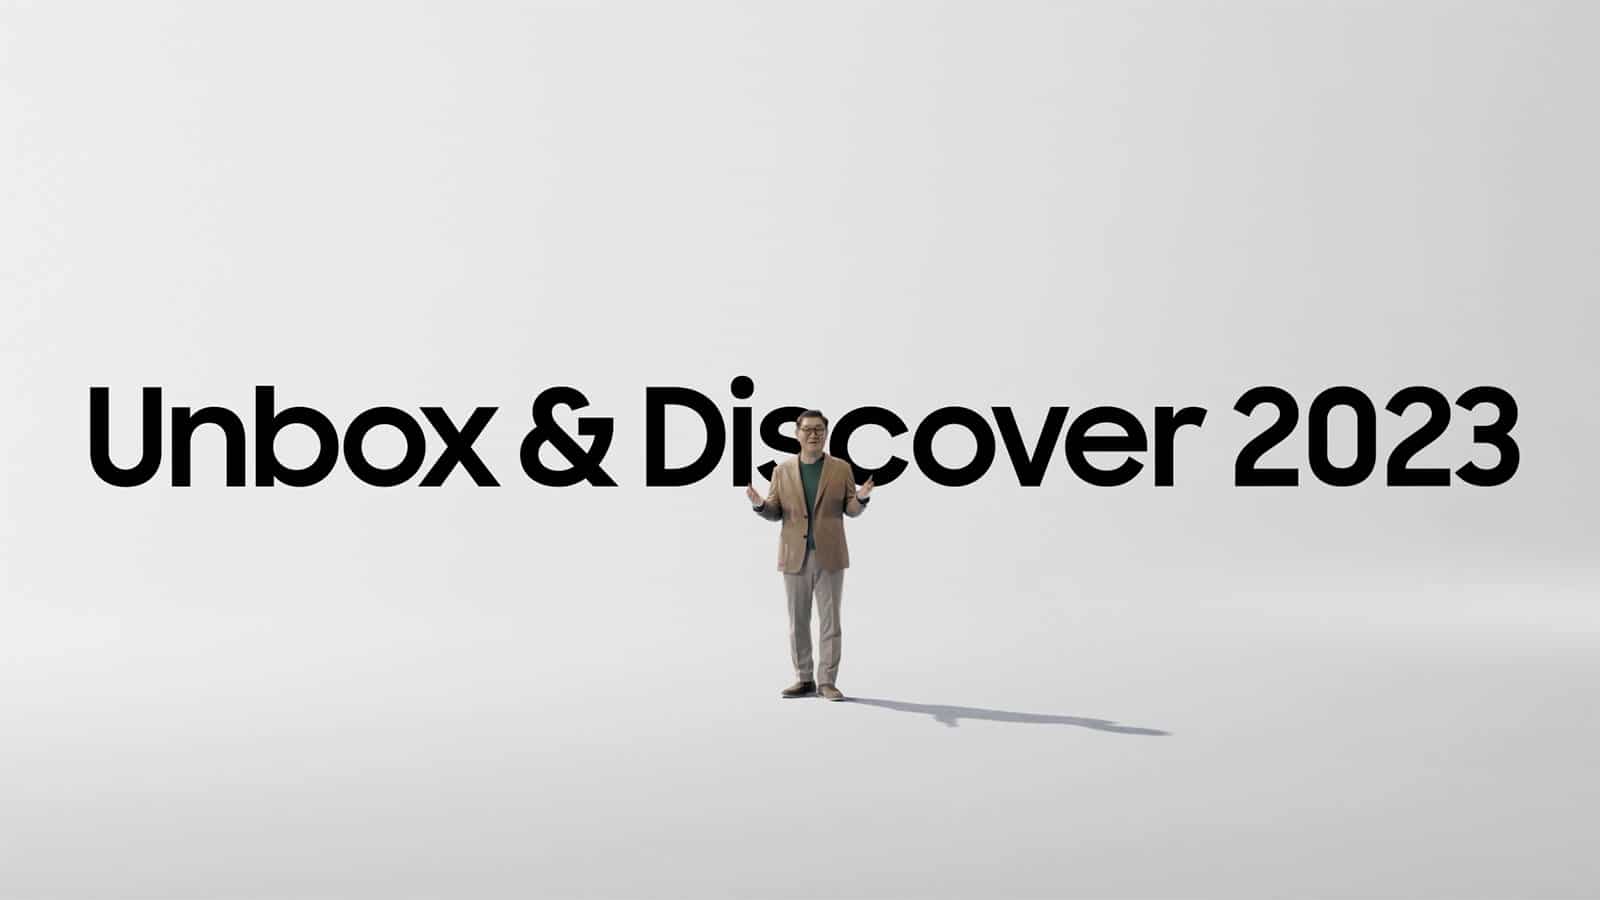 Τηλεοράσεις Samsung 2023, Unbox & Discover: Νέα σειρά τηλεοράσεων Samsung 2023